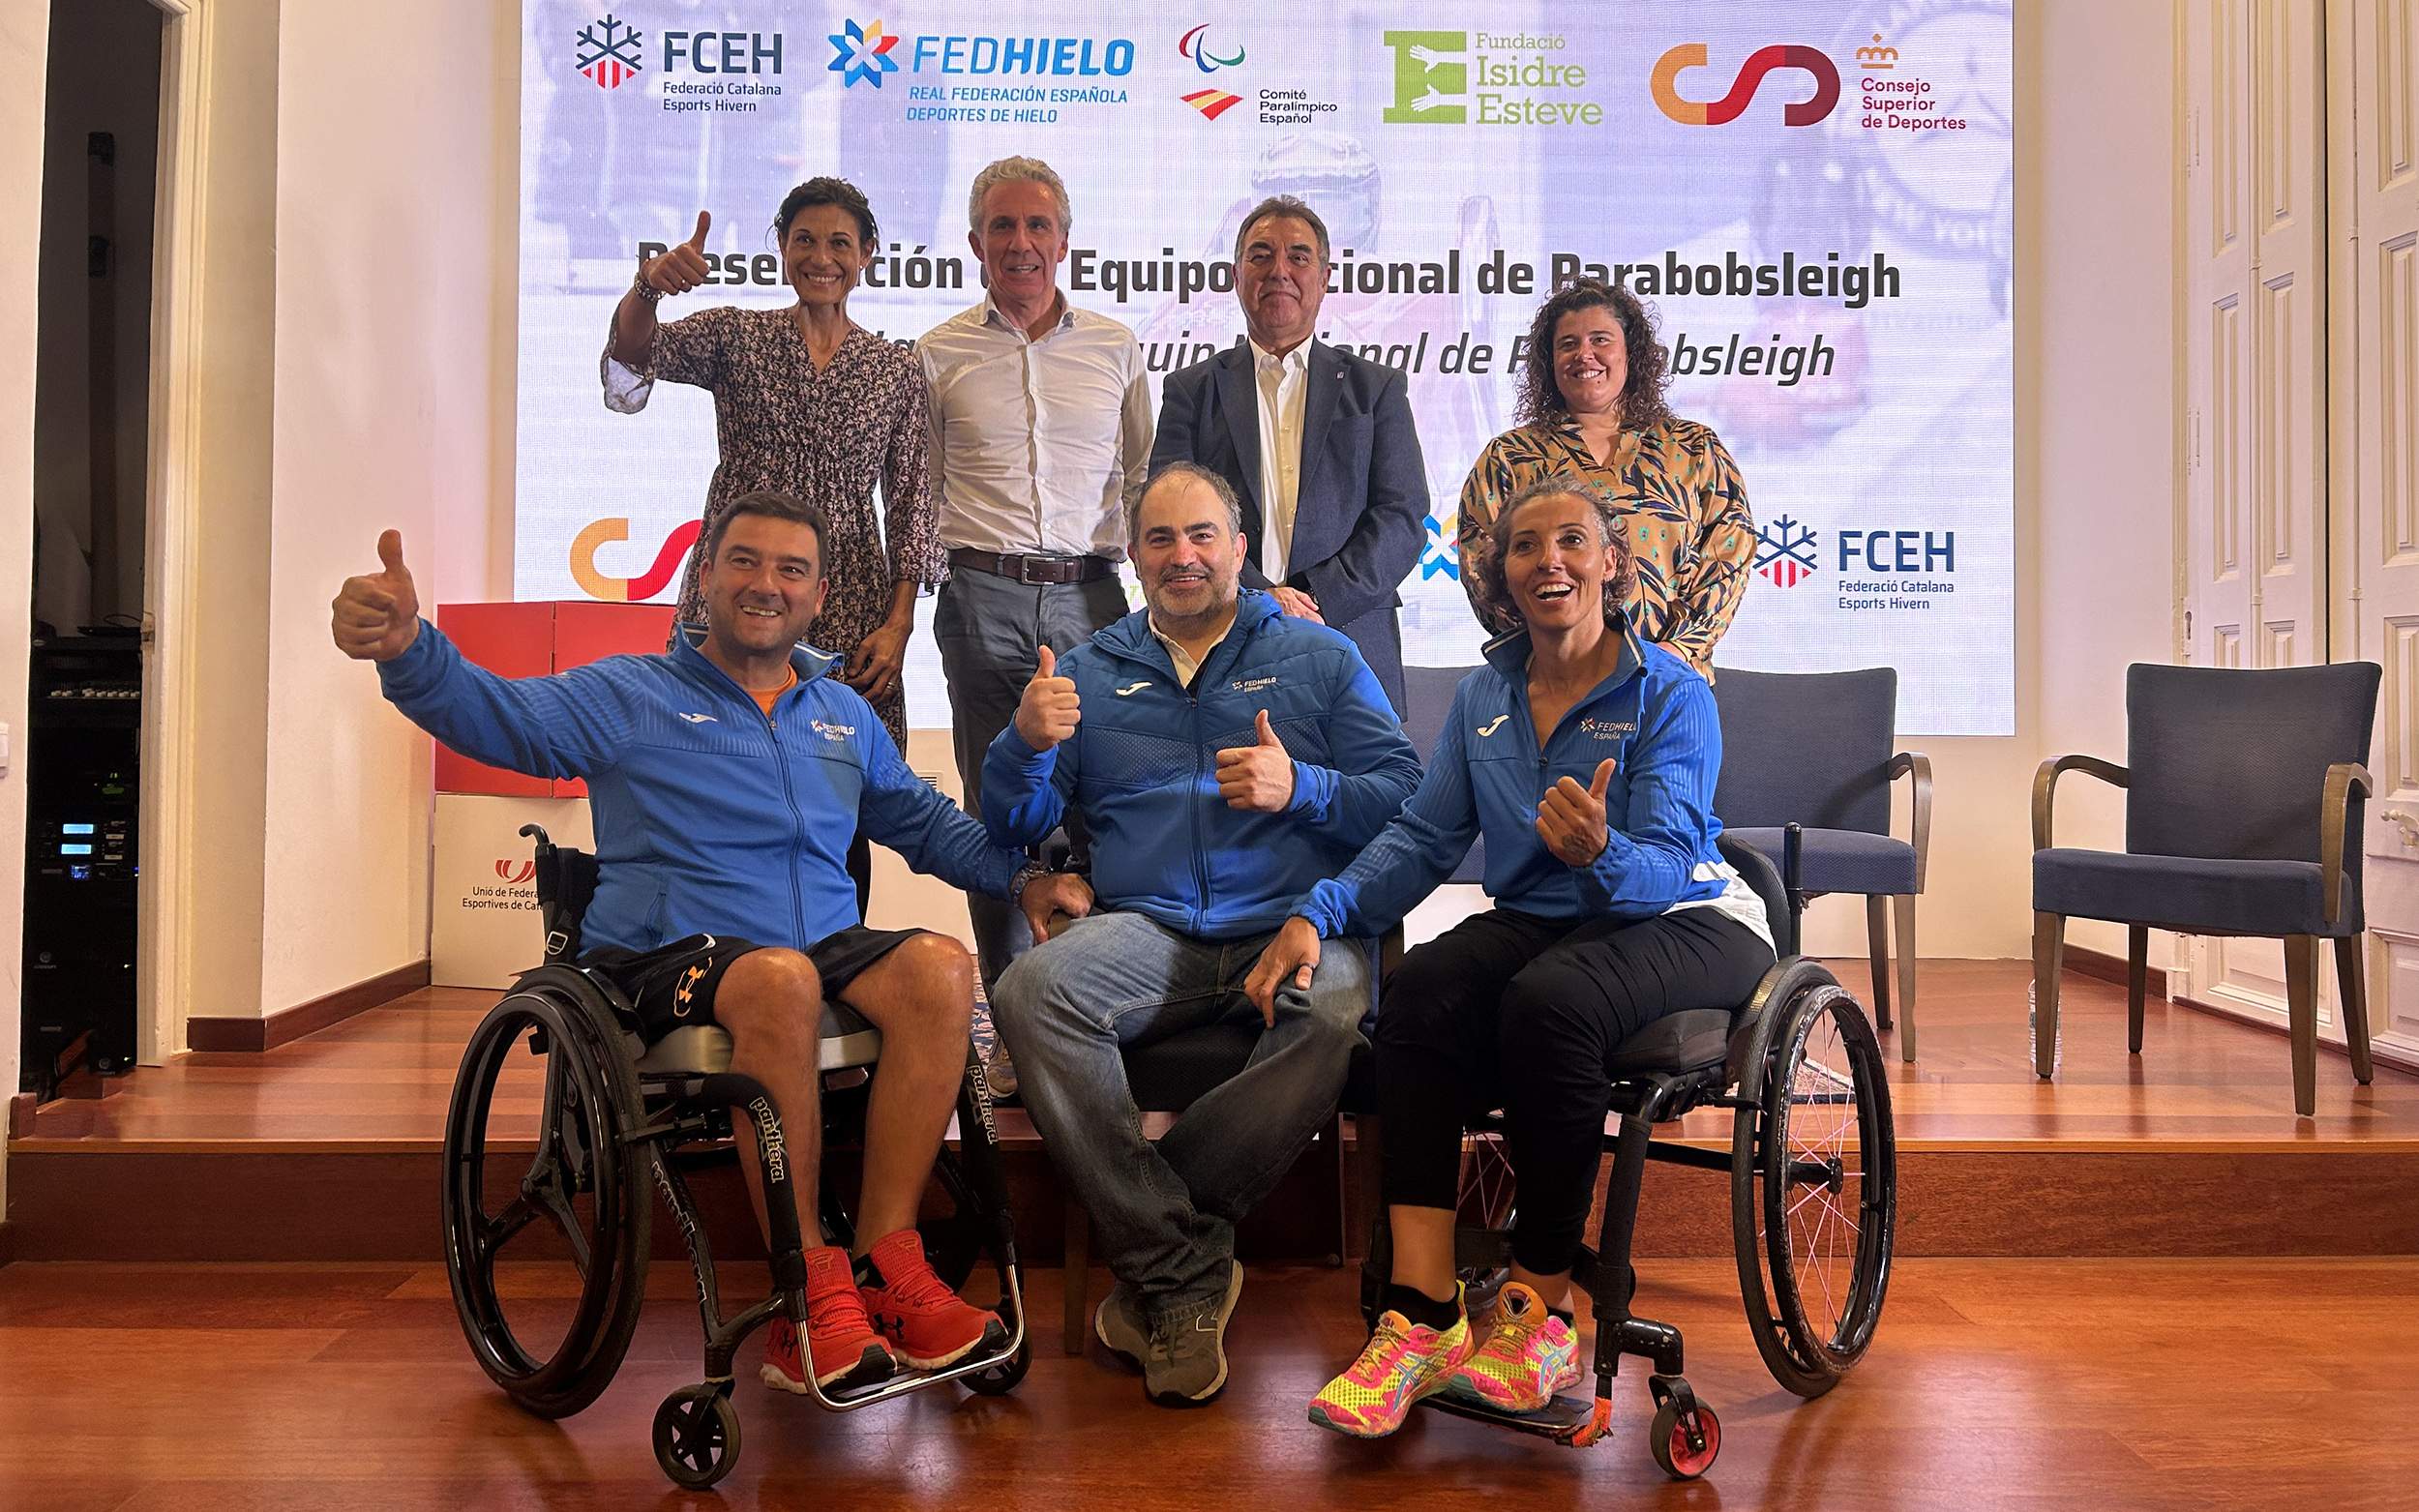 , La RFEDH presenta su proyecto de parabobsleigh para la temporada 2022-23, Real Federación Española Deportes de Hielo